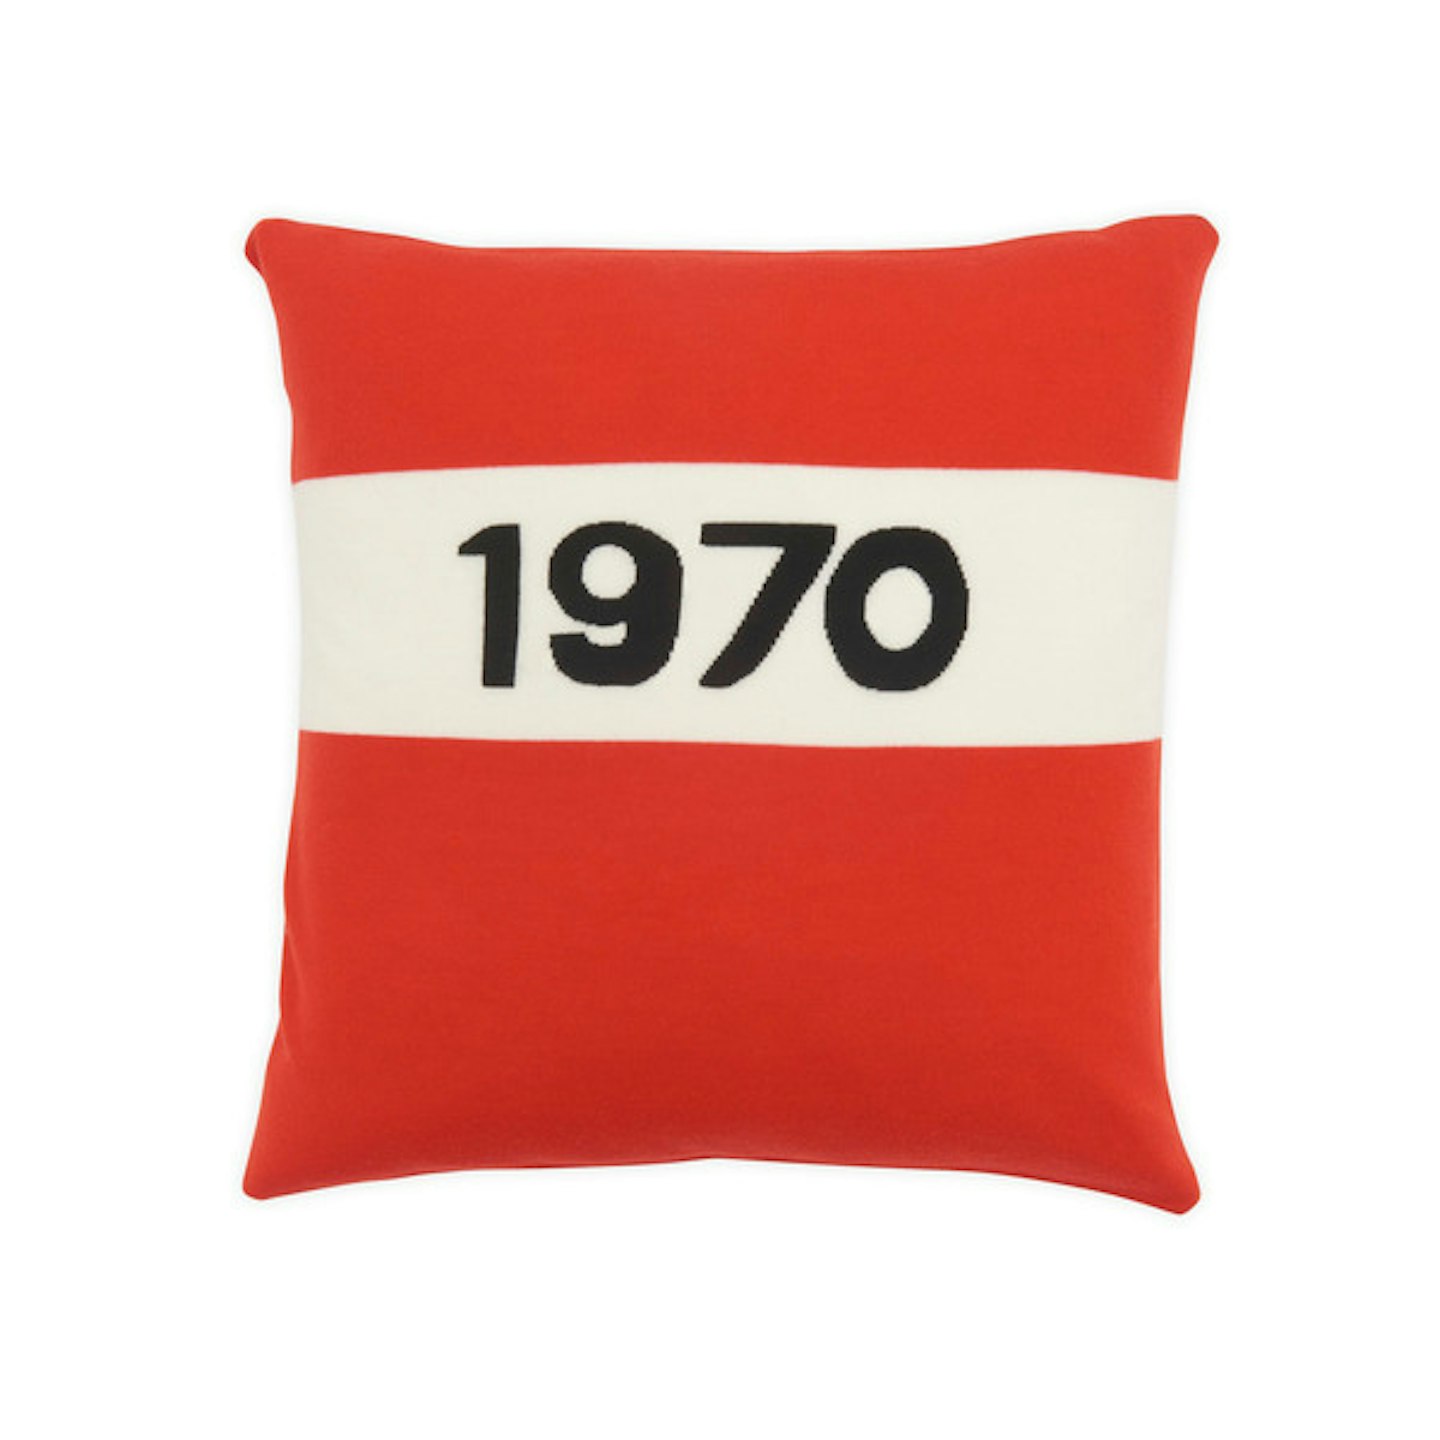 Red 1970 cushion bella freud